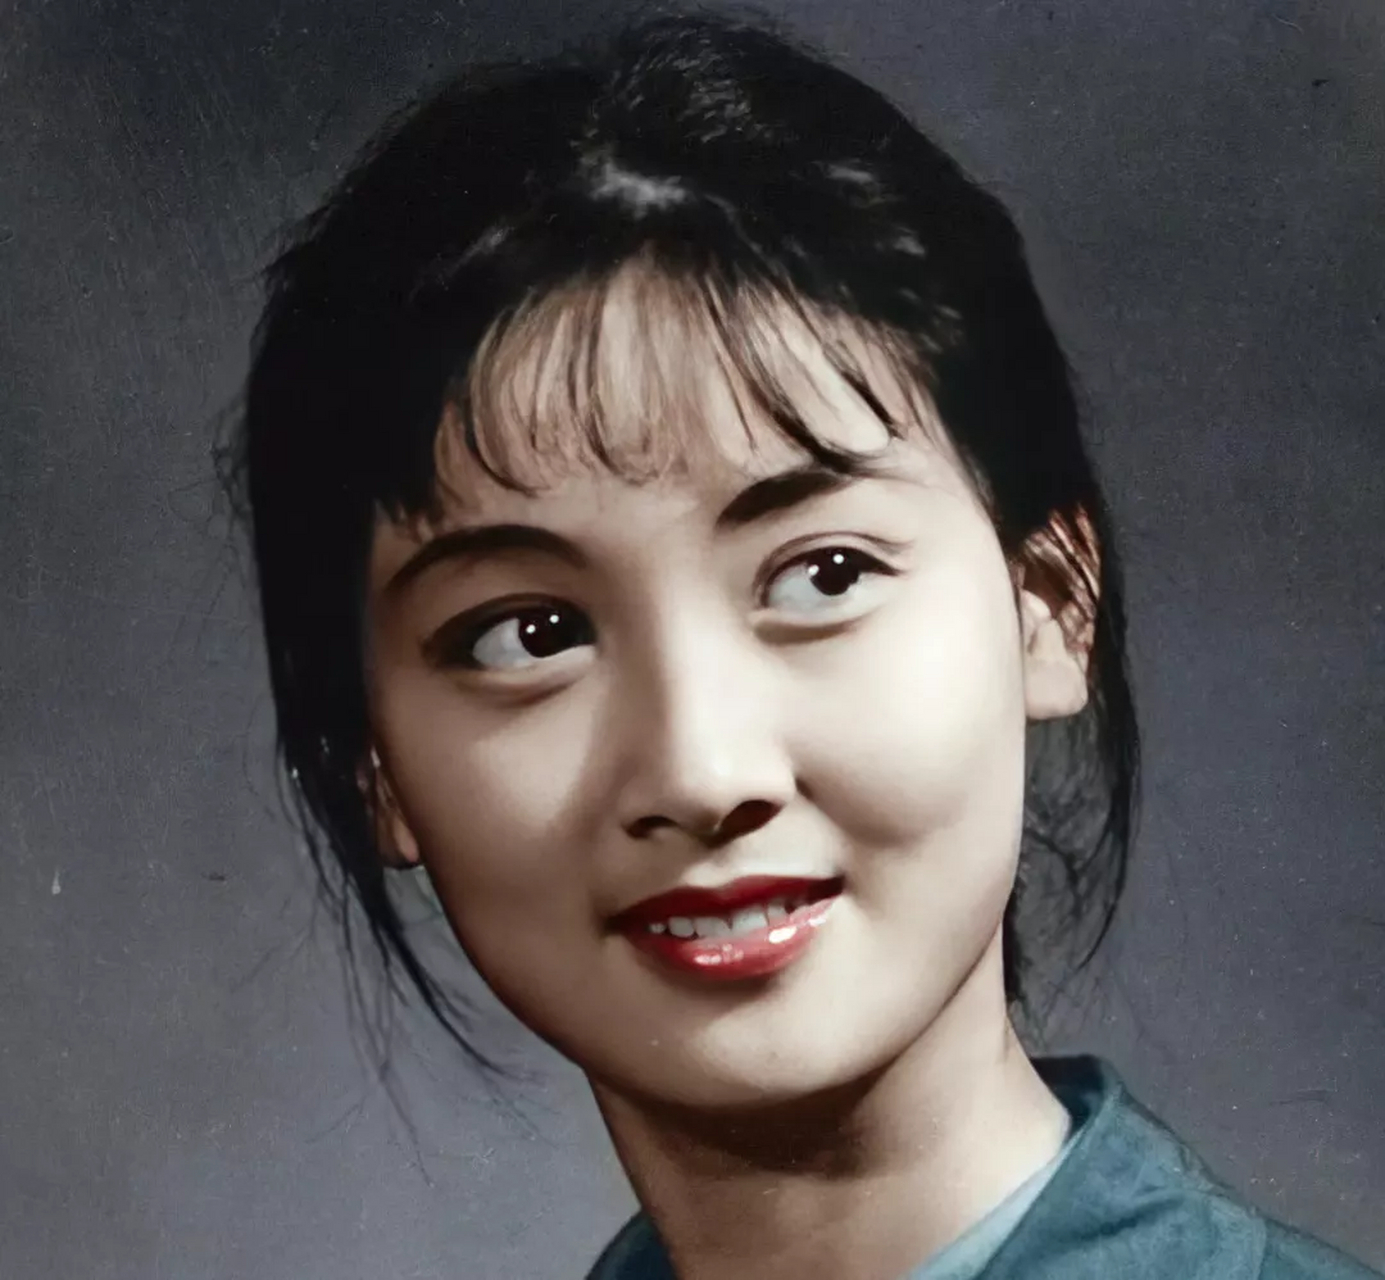 年轻时的张国立老婆邓婕,简直就是一道白月光